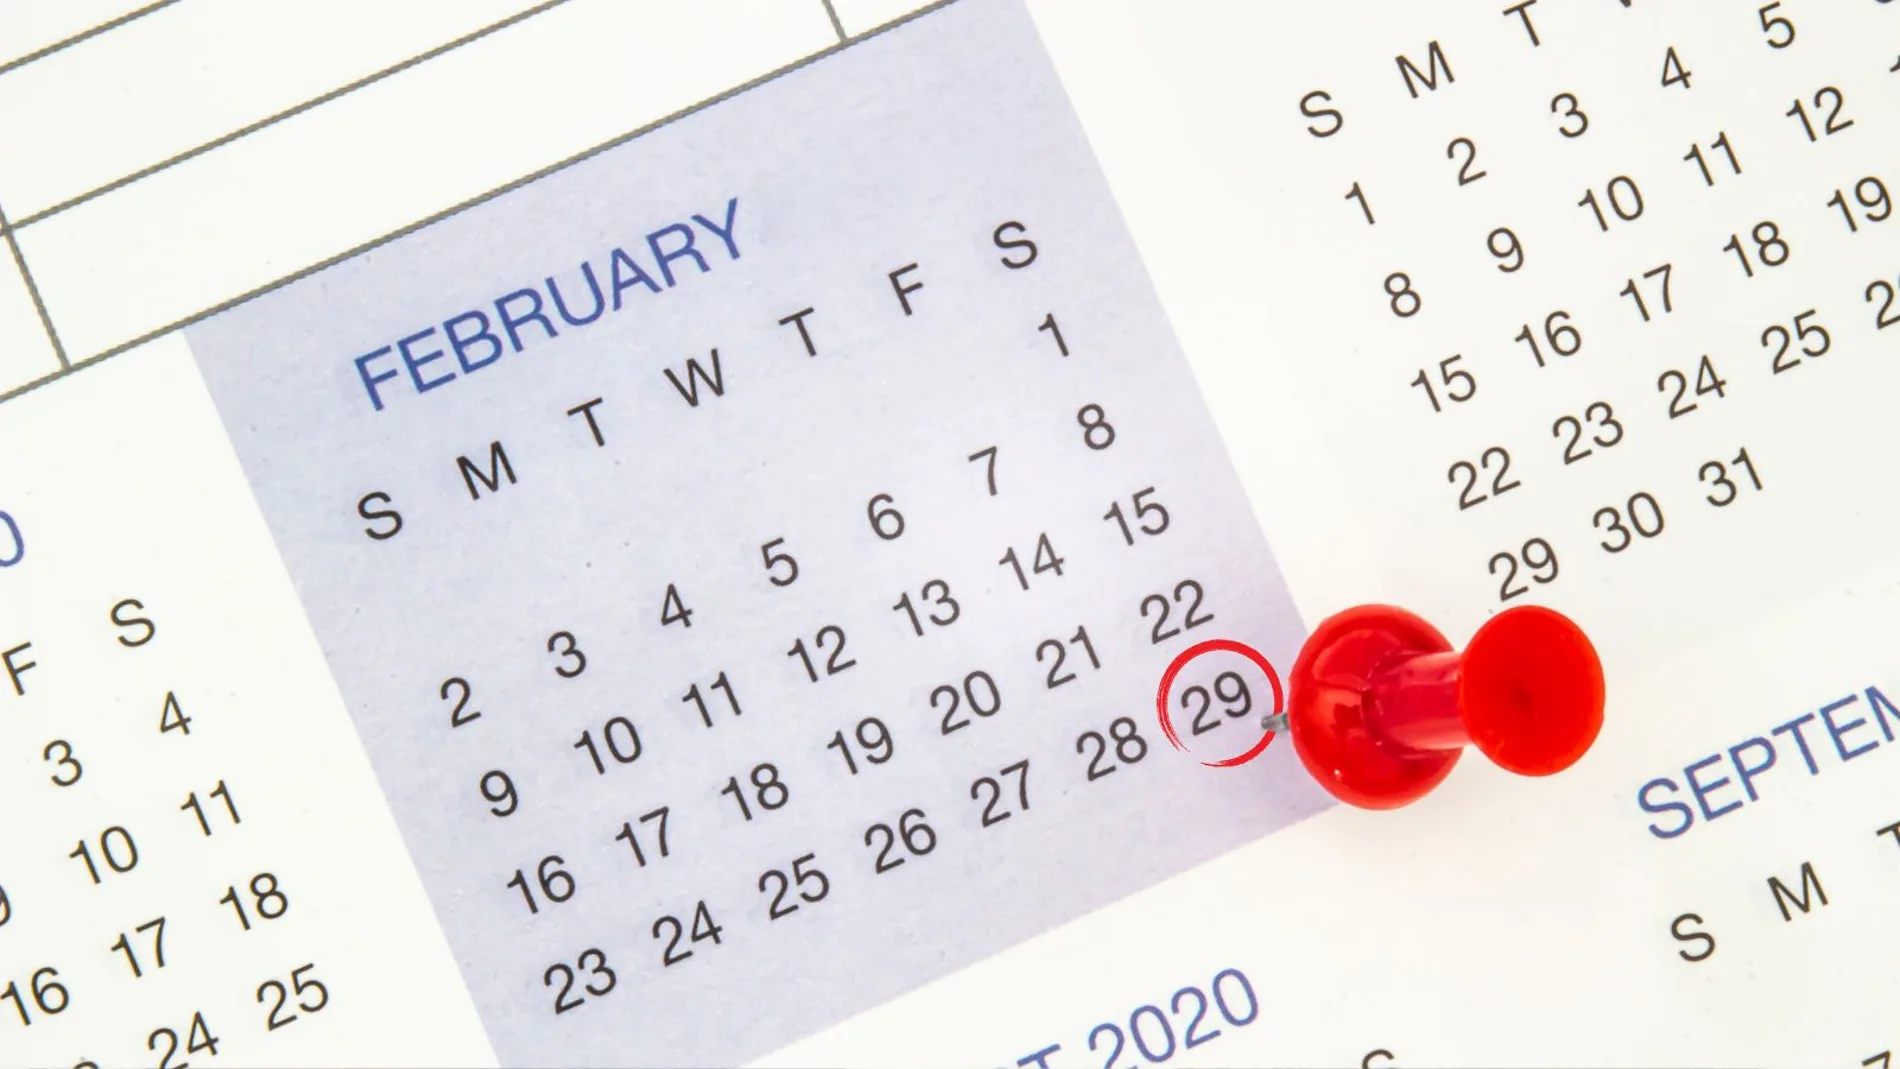 ¿Cobrarás más este mes de febrero por ser año bisiesto?